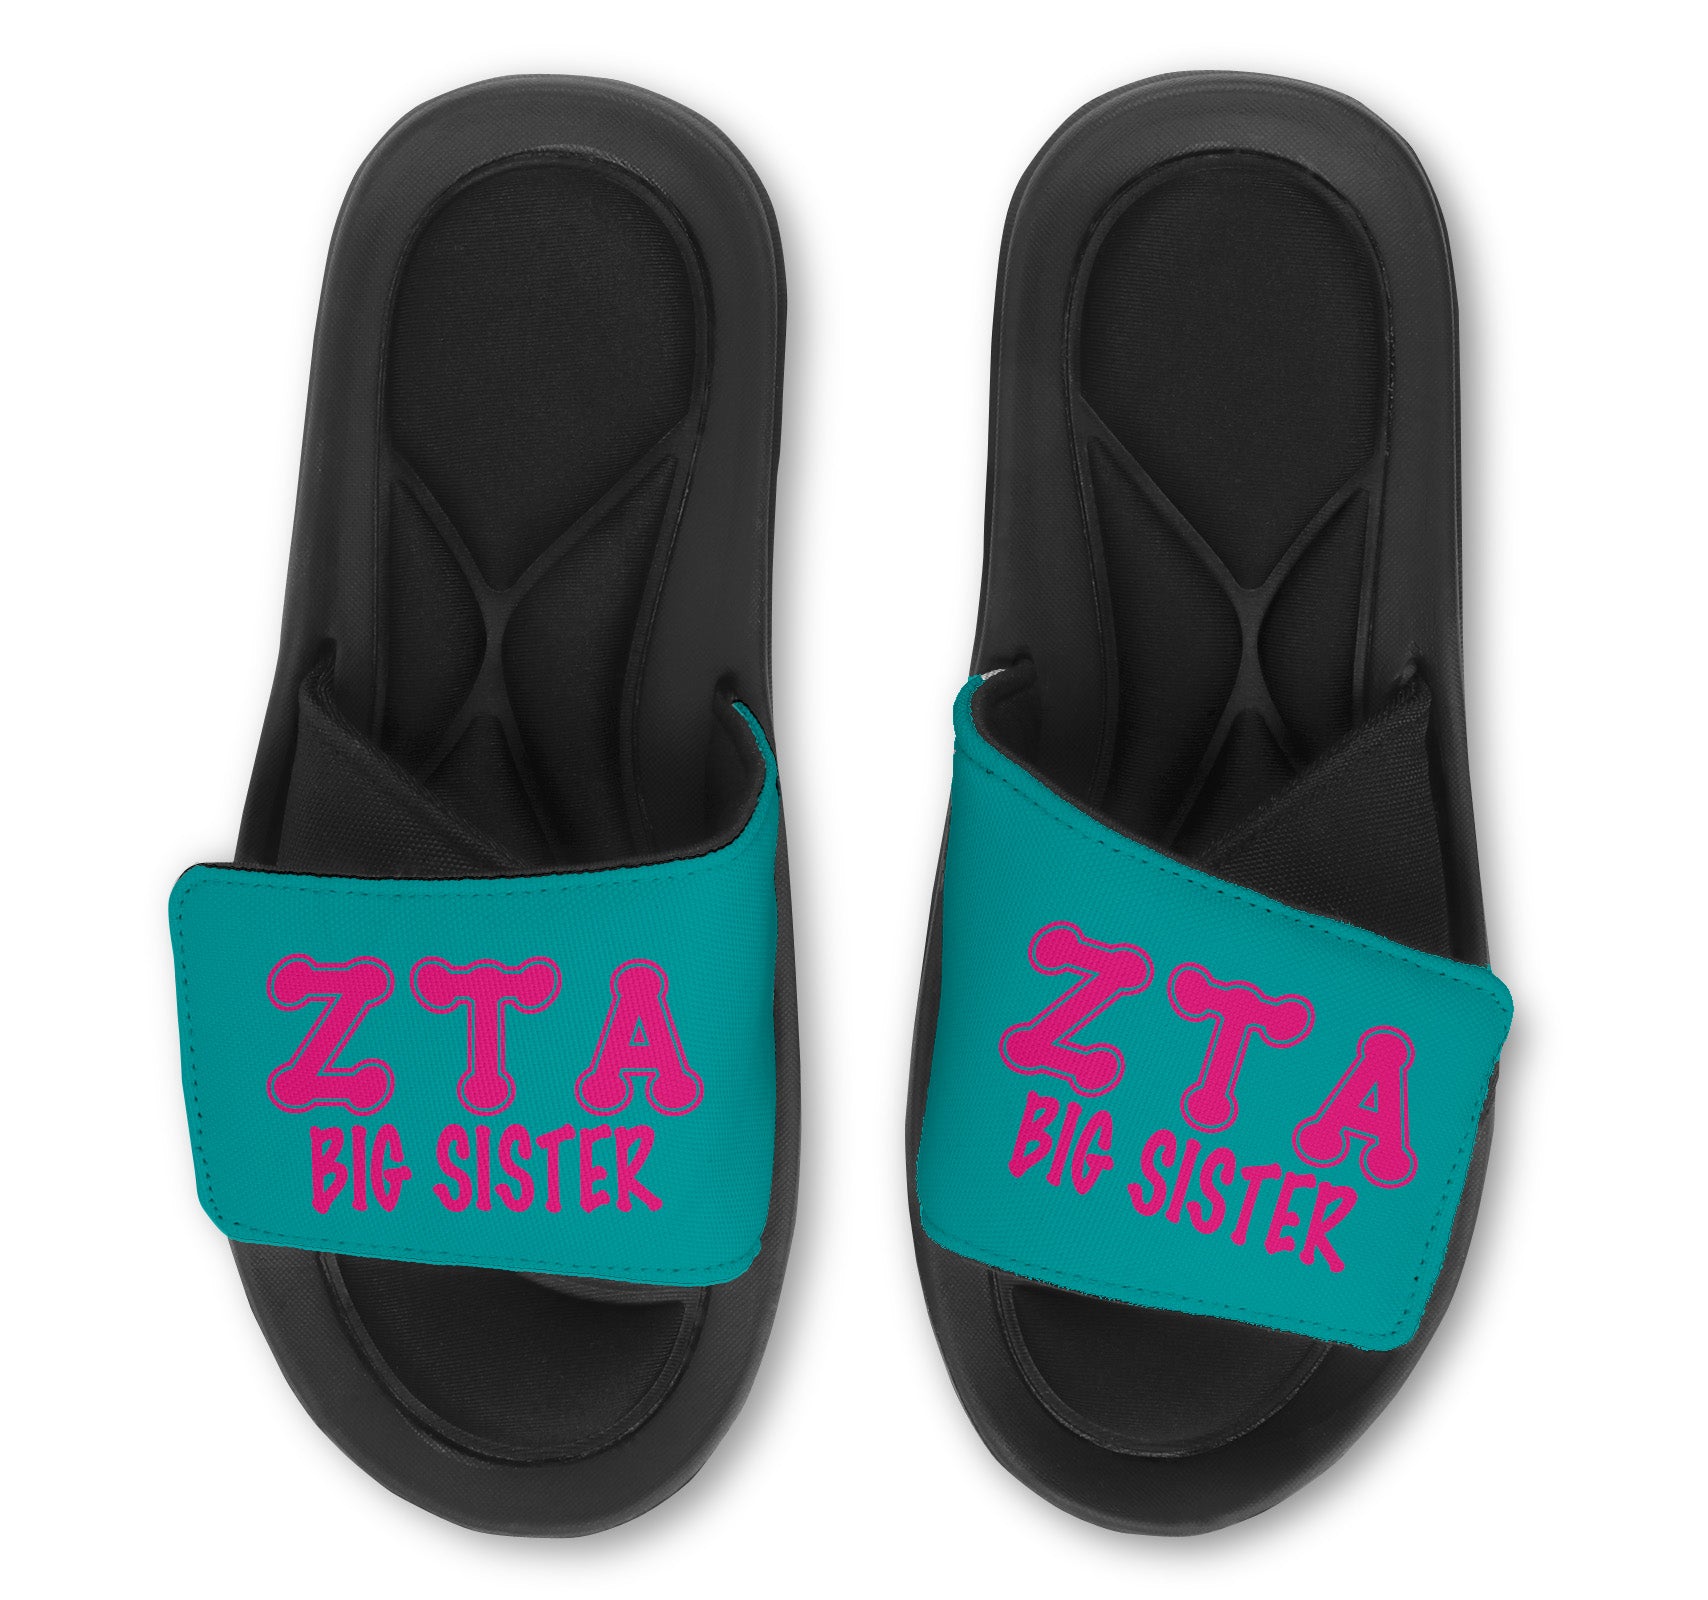 Zeta Tau Alpha Slides - Big Sister